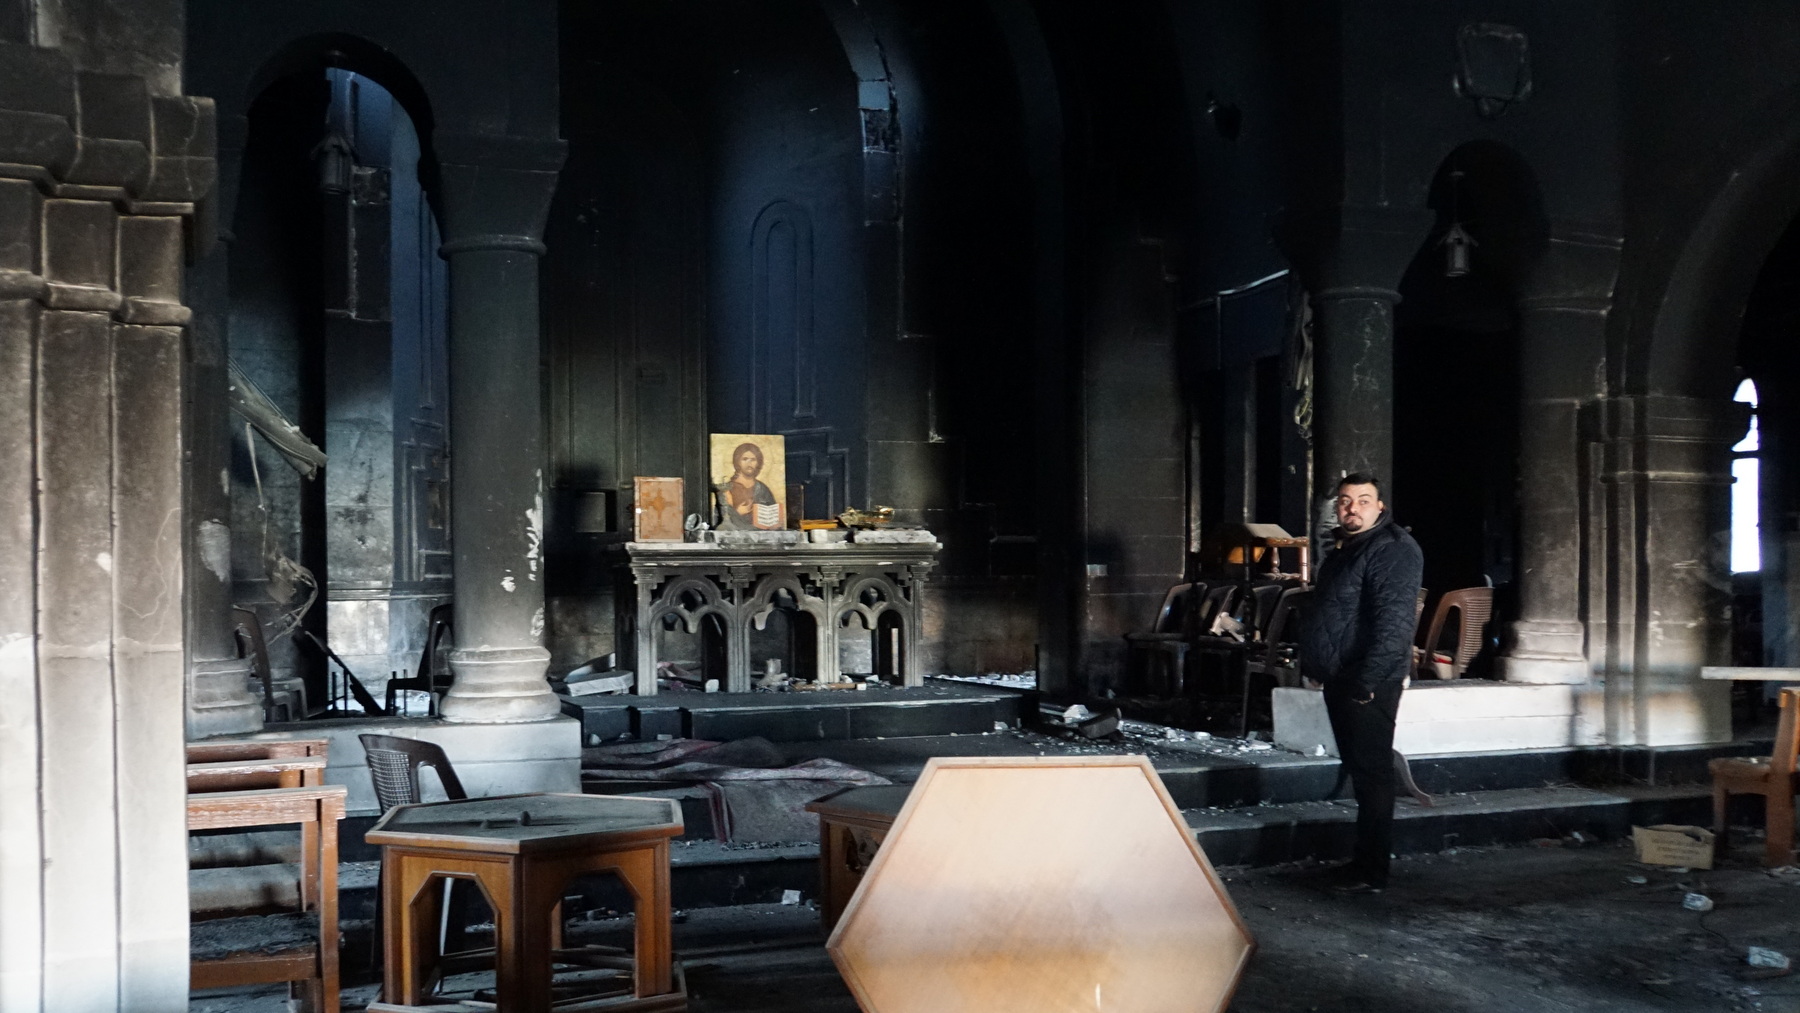 <p>L'église a été brulée et la bibliothèque sacagée par Daech.<br class='autobr' />
Au milieu de cette noirceur, l'icone du Christ est de retour sur l'autel.</p>